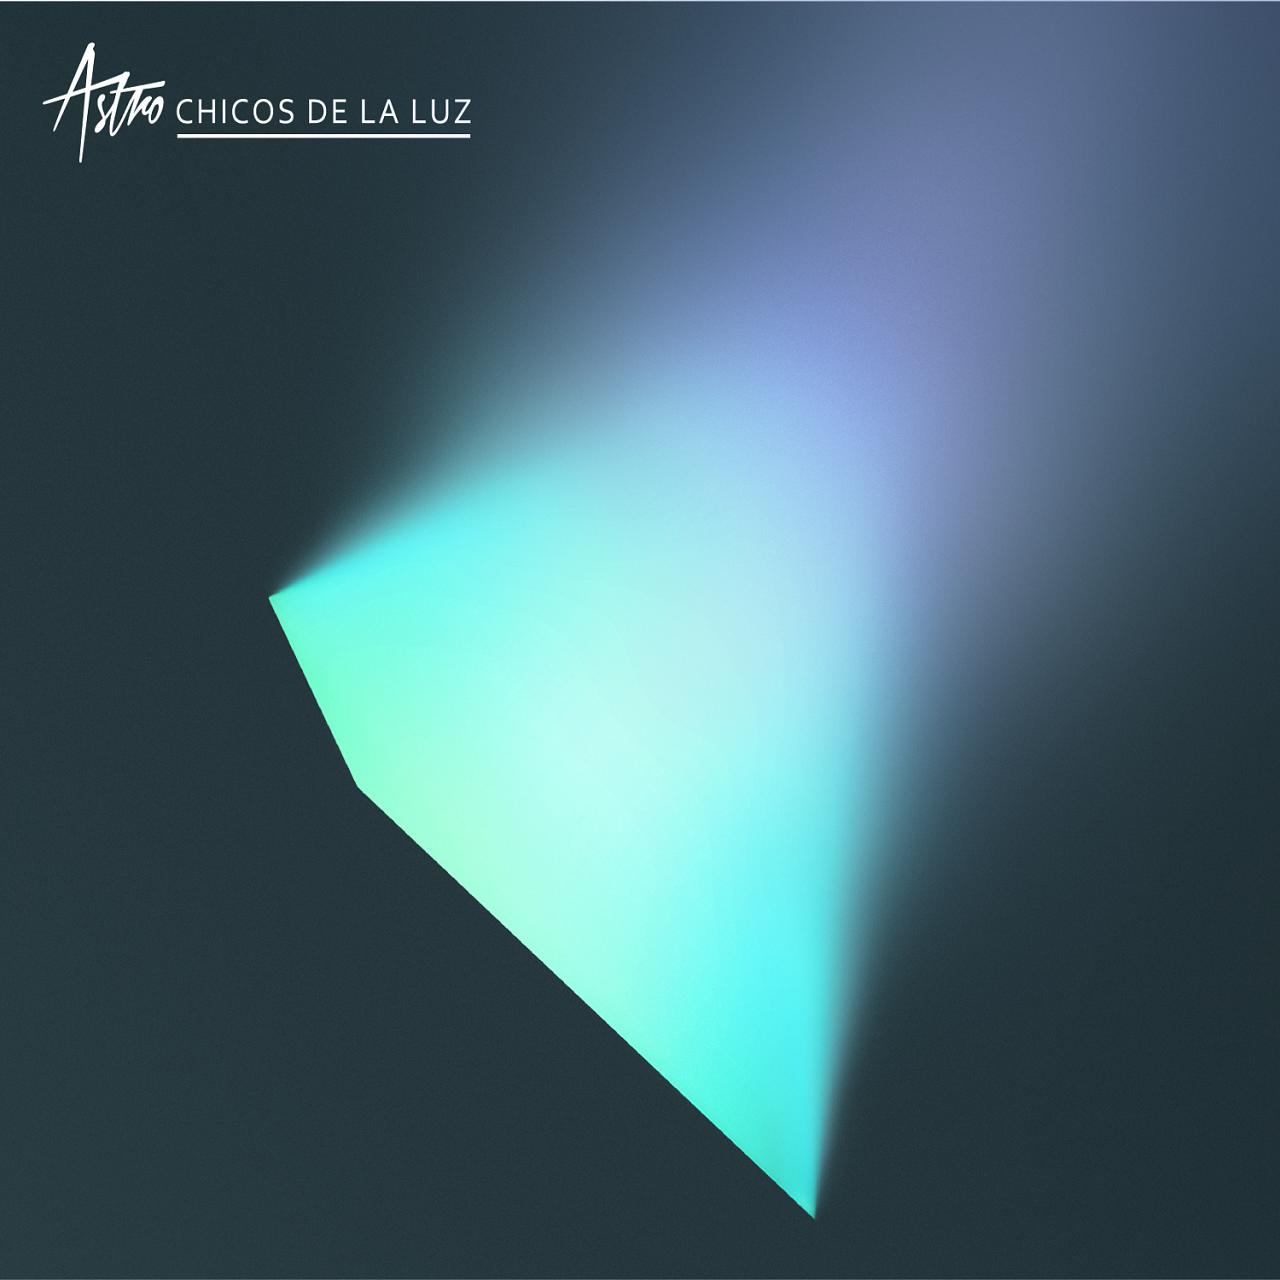 Nuevo álbum de Astro: Chicos de la Luz